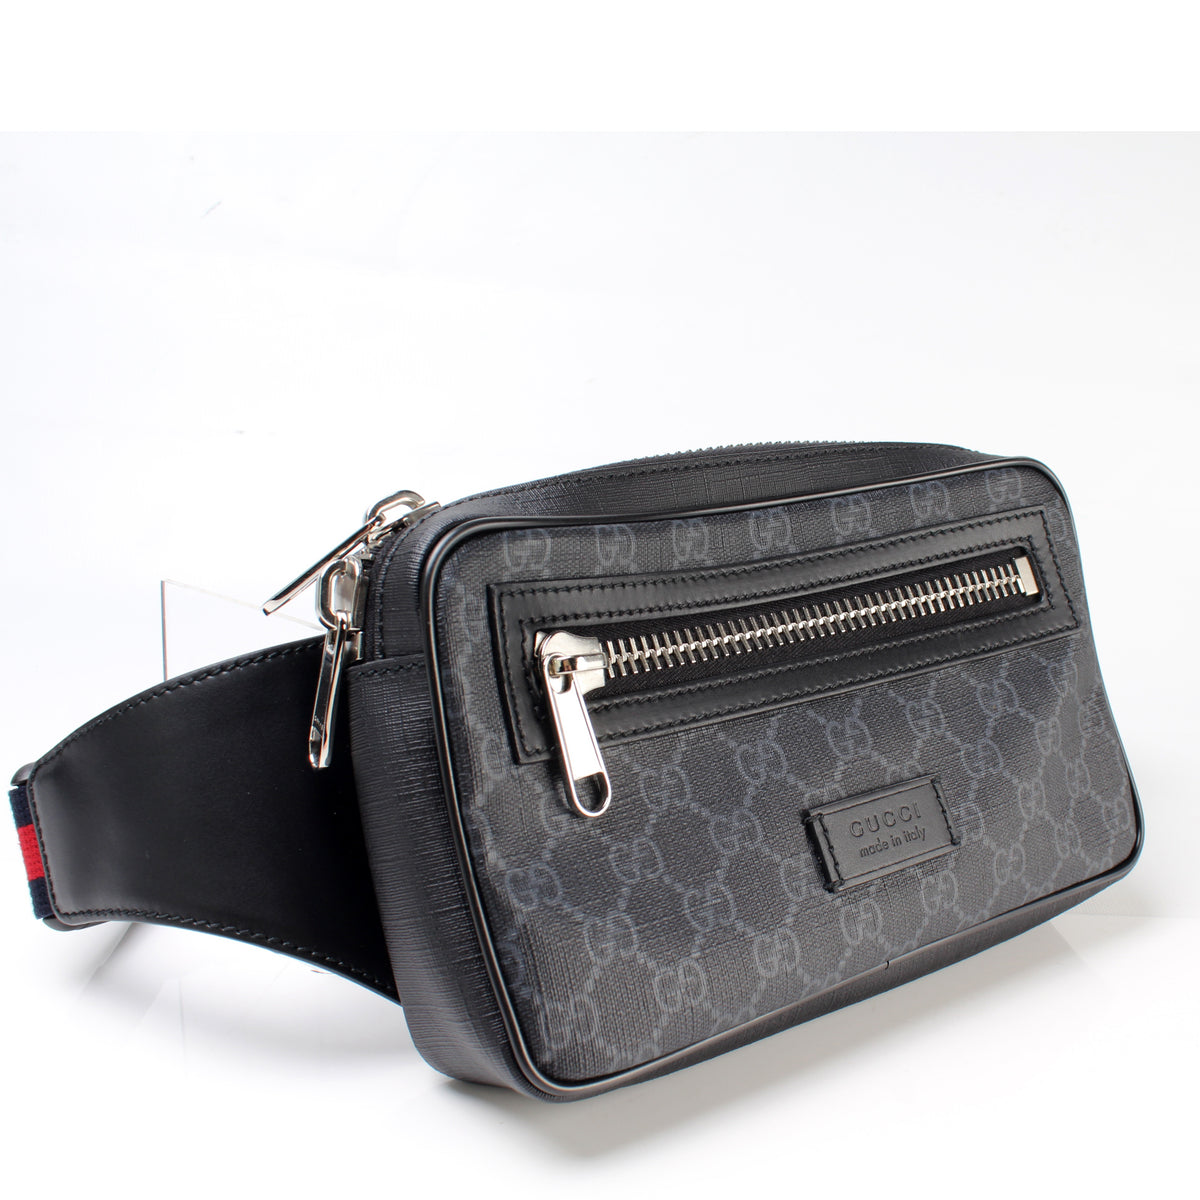 GG Supreme Belt Bag in Black - Gucci